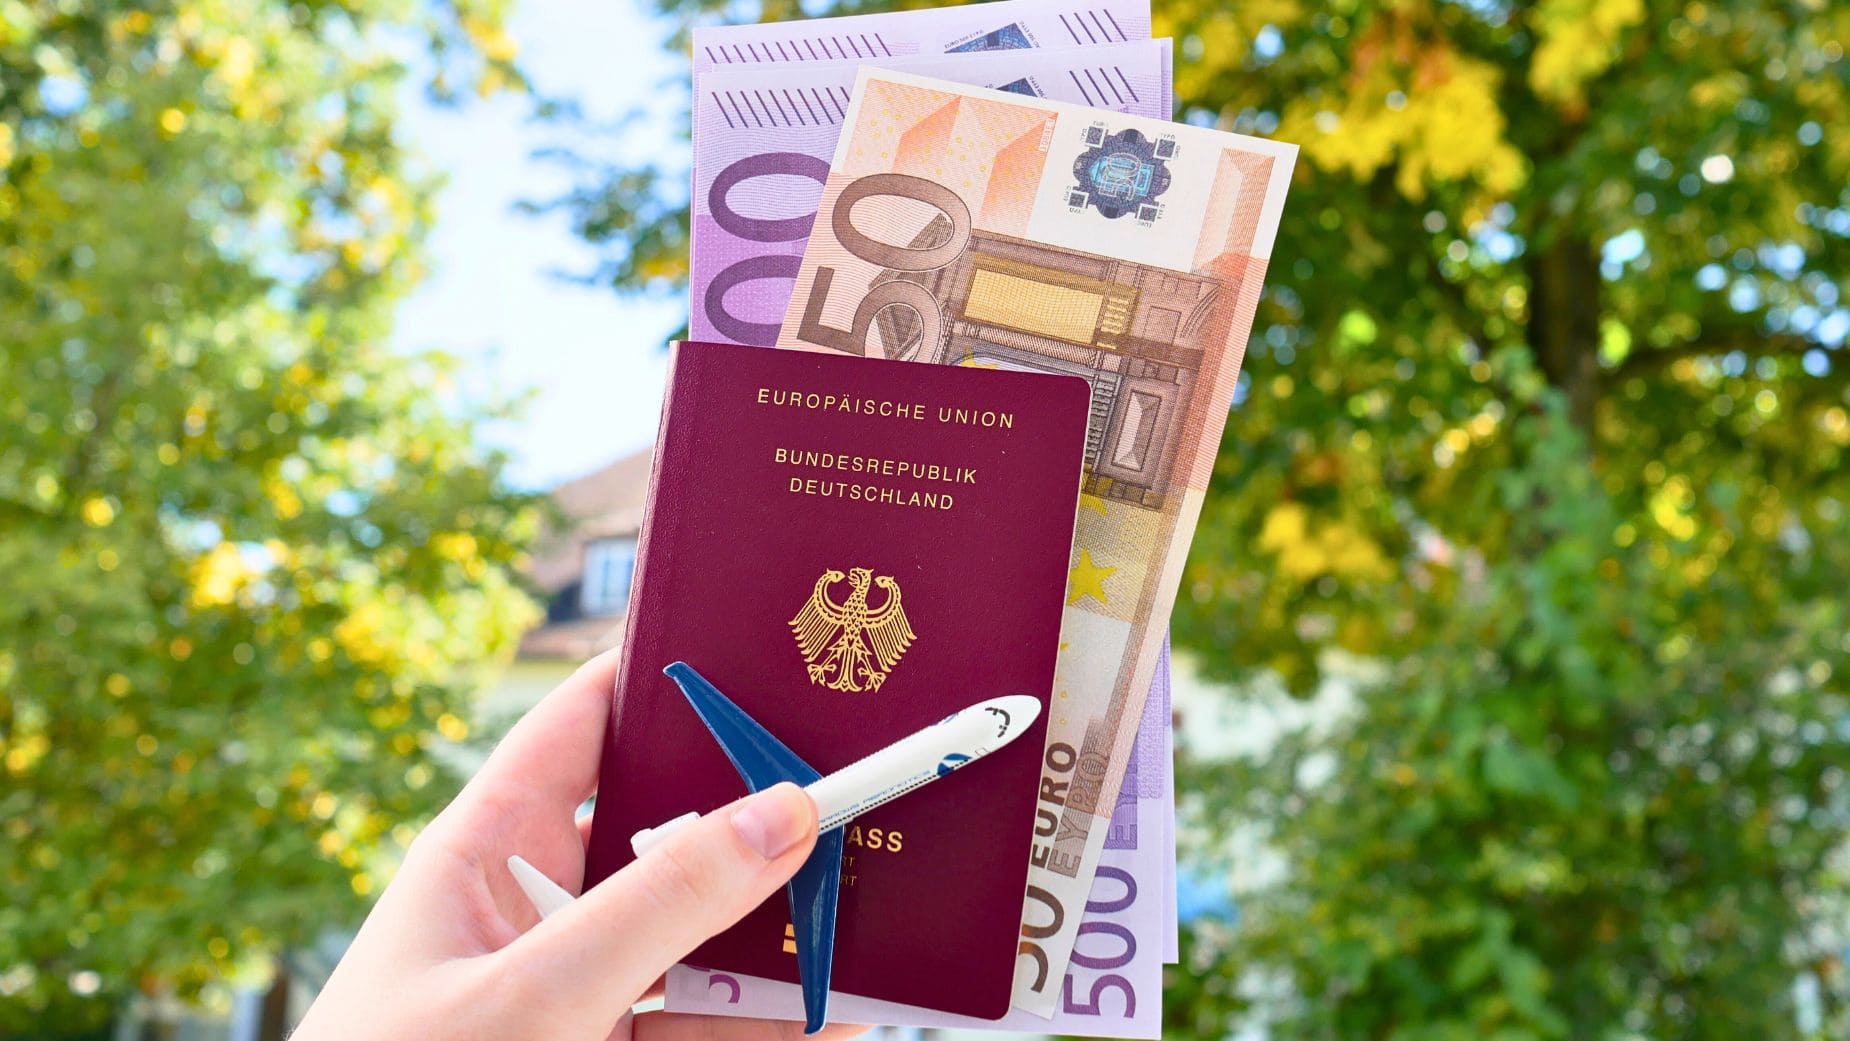 Los préstamos para viajes aumentan en España con peligro de deudas